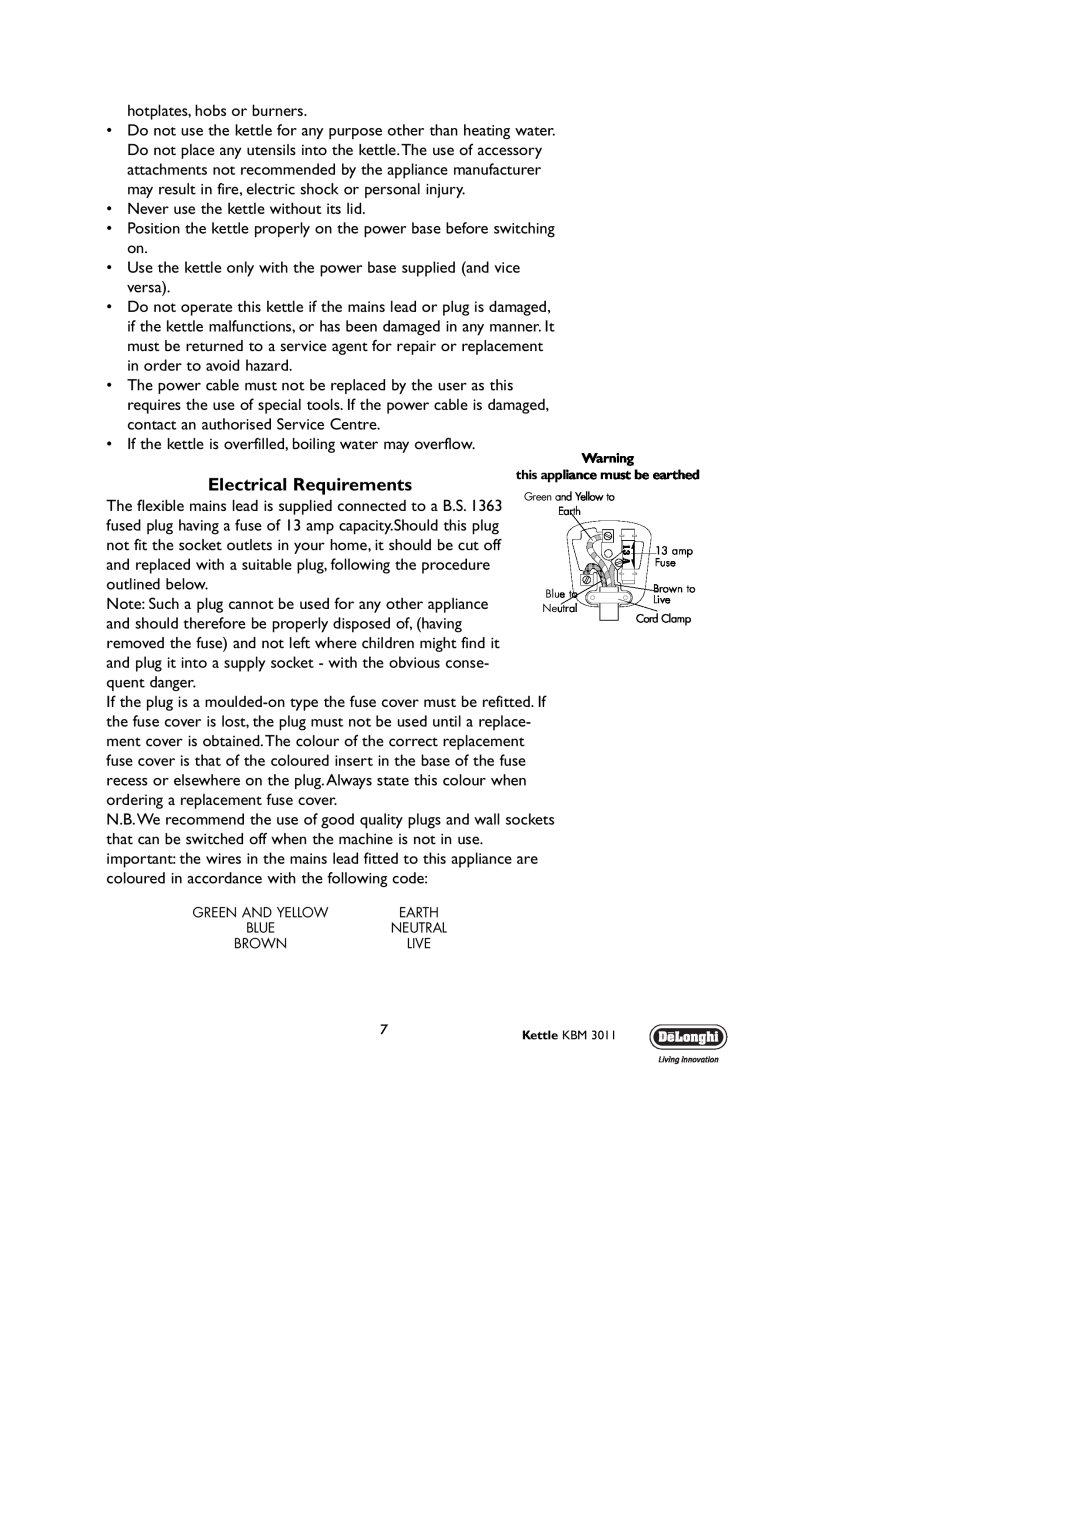 DeLonghi KBM3011 manual Electrical Requirements 